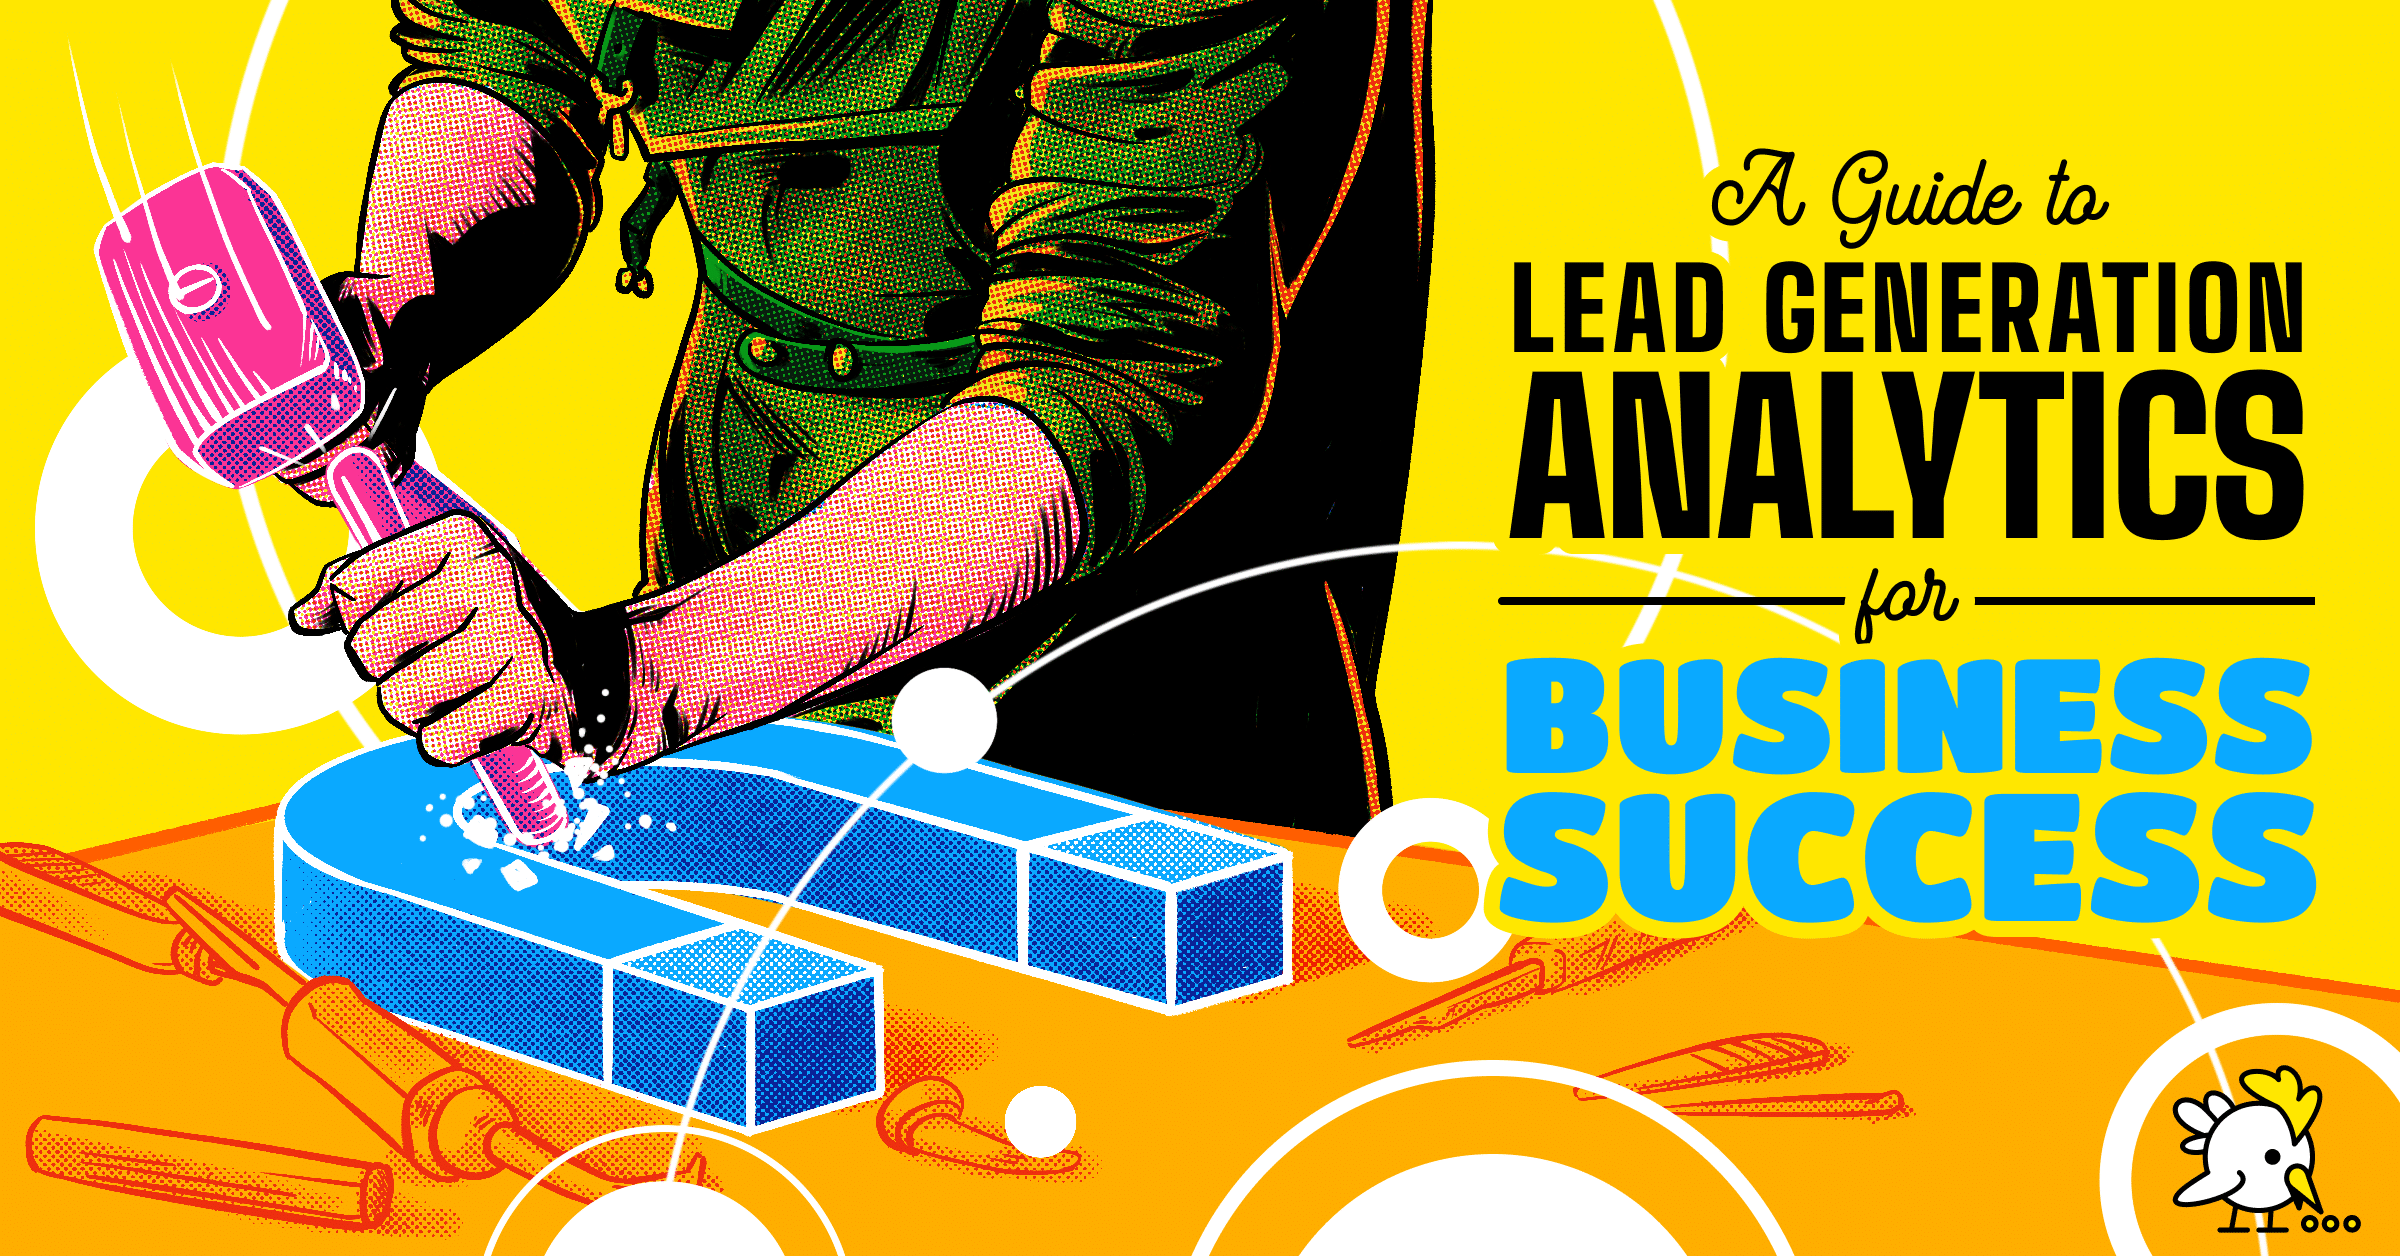 categ-LeadGen2-analytics-business-success-fig@2x.png